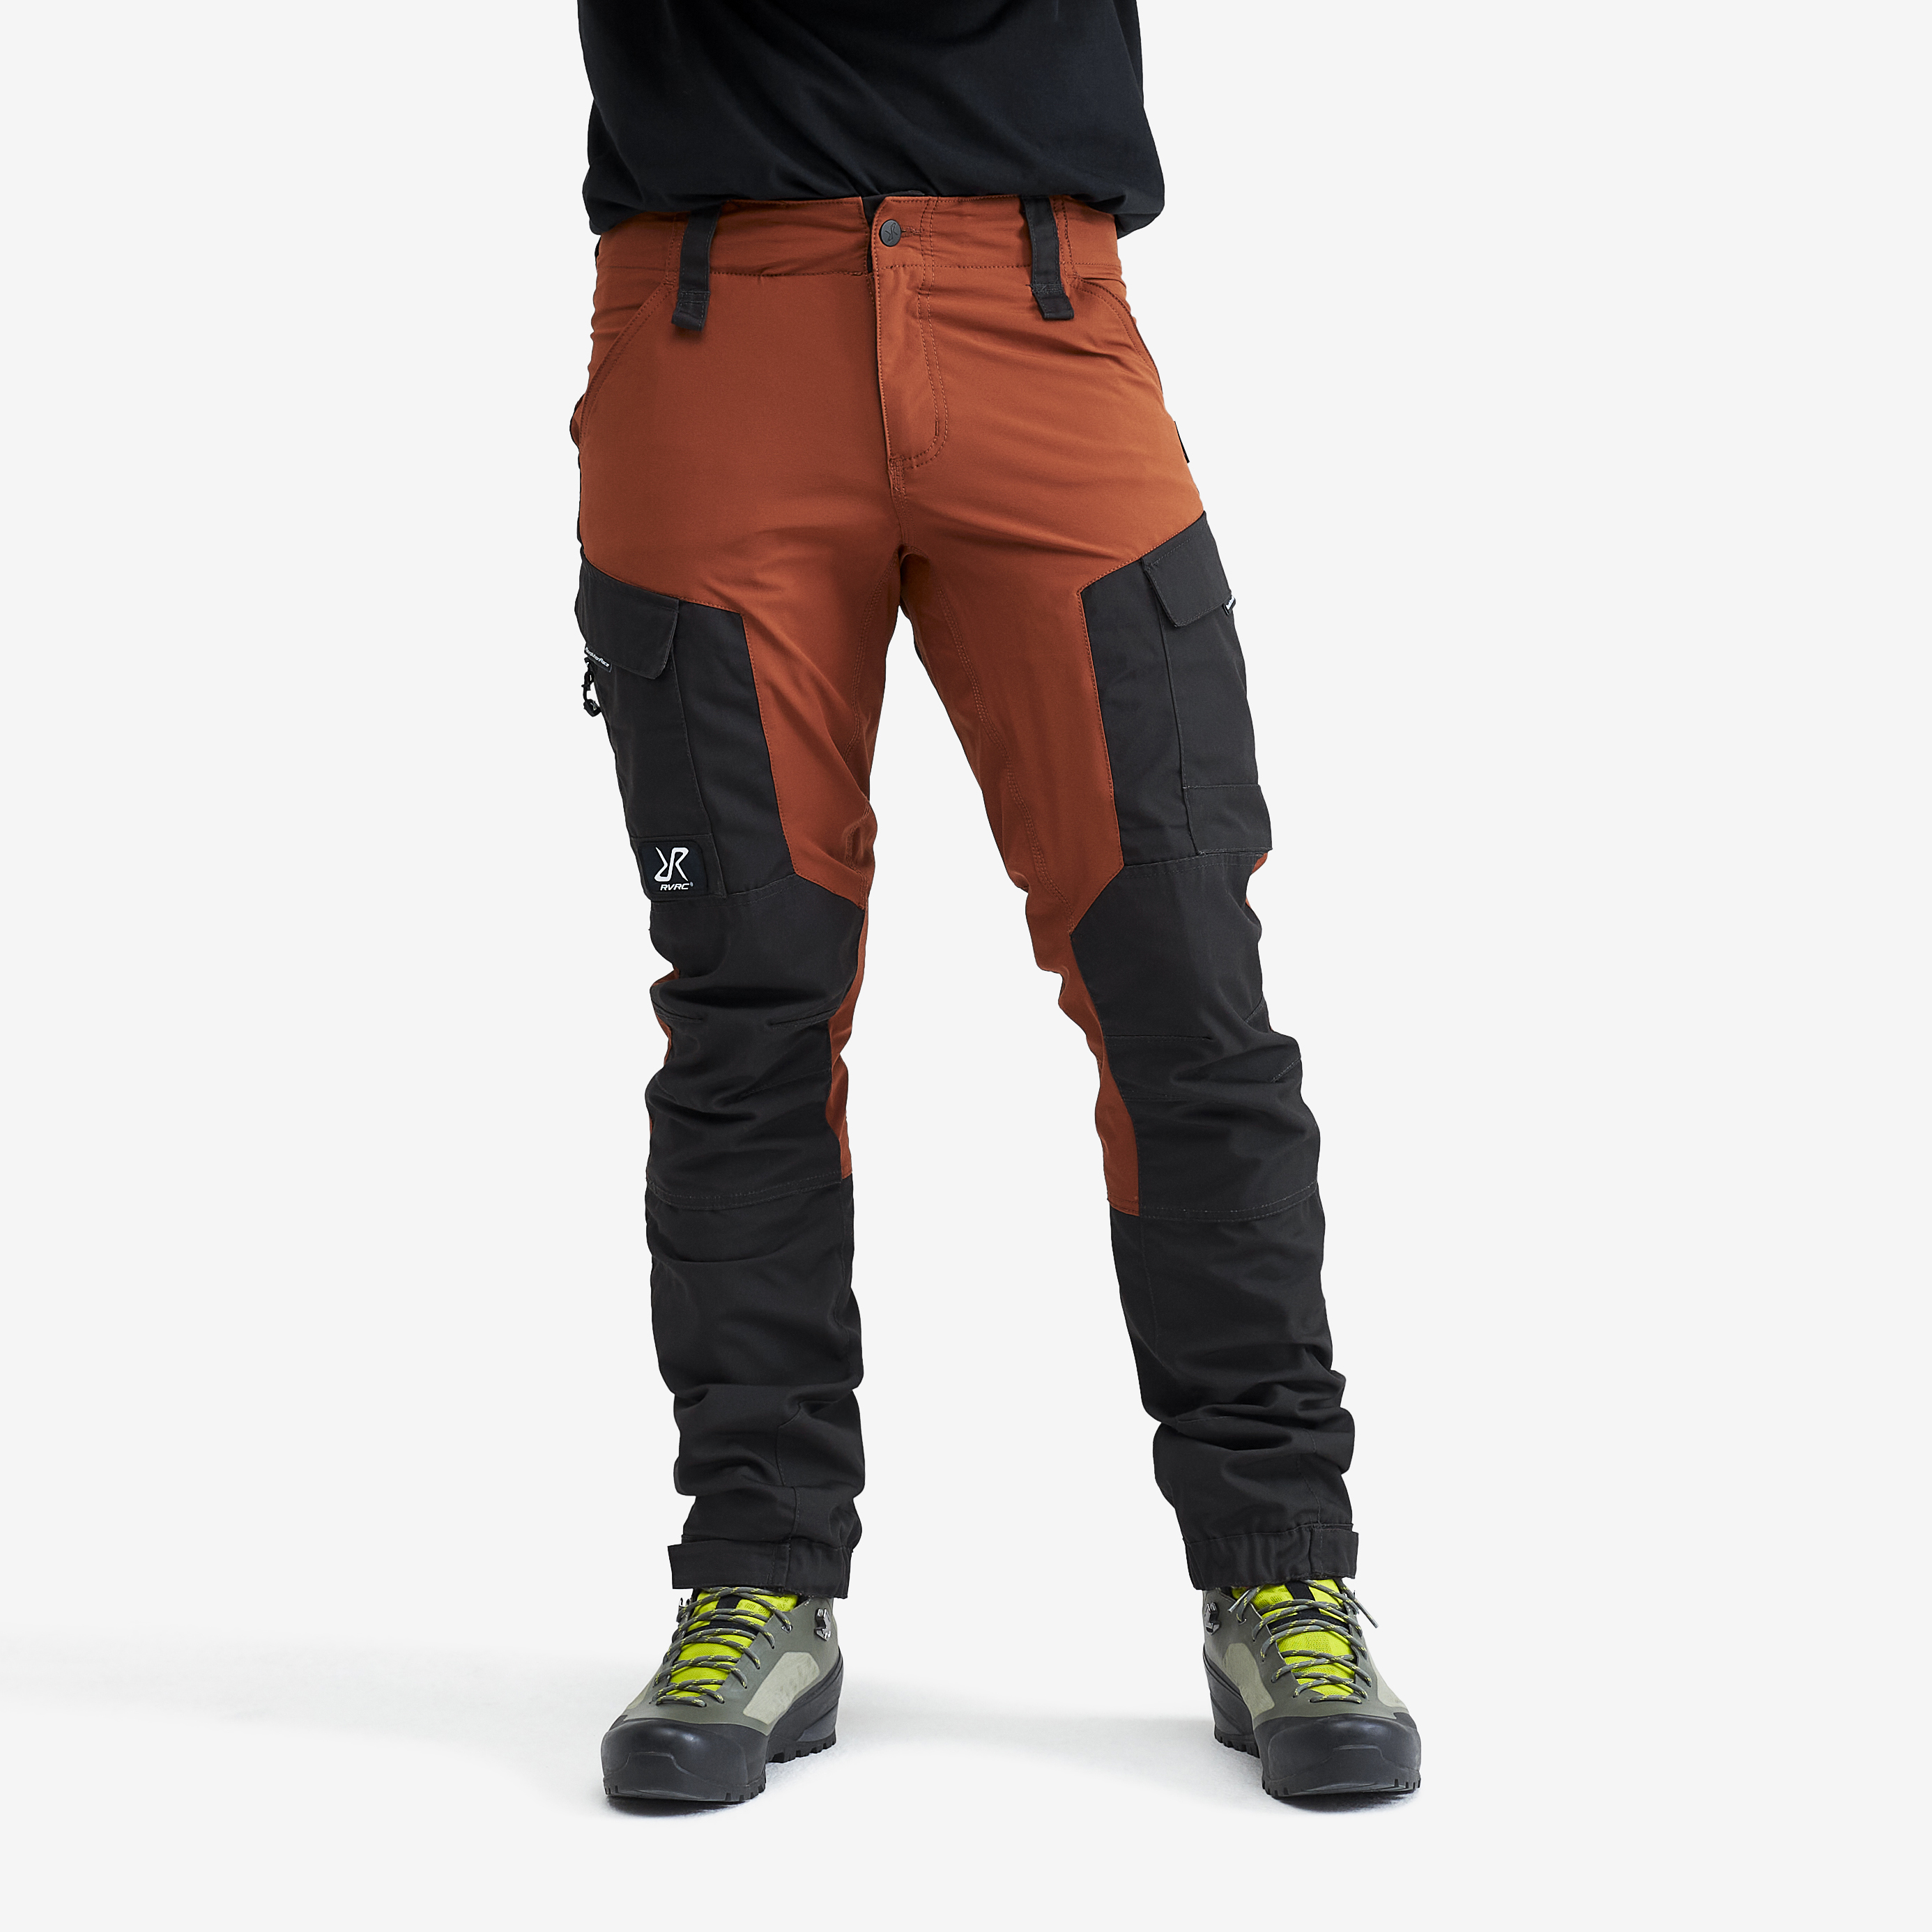 RVRC GP spodnie outdoorowe męskie pomarańczowy